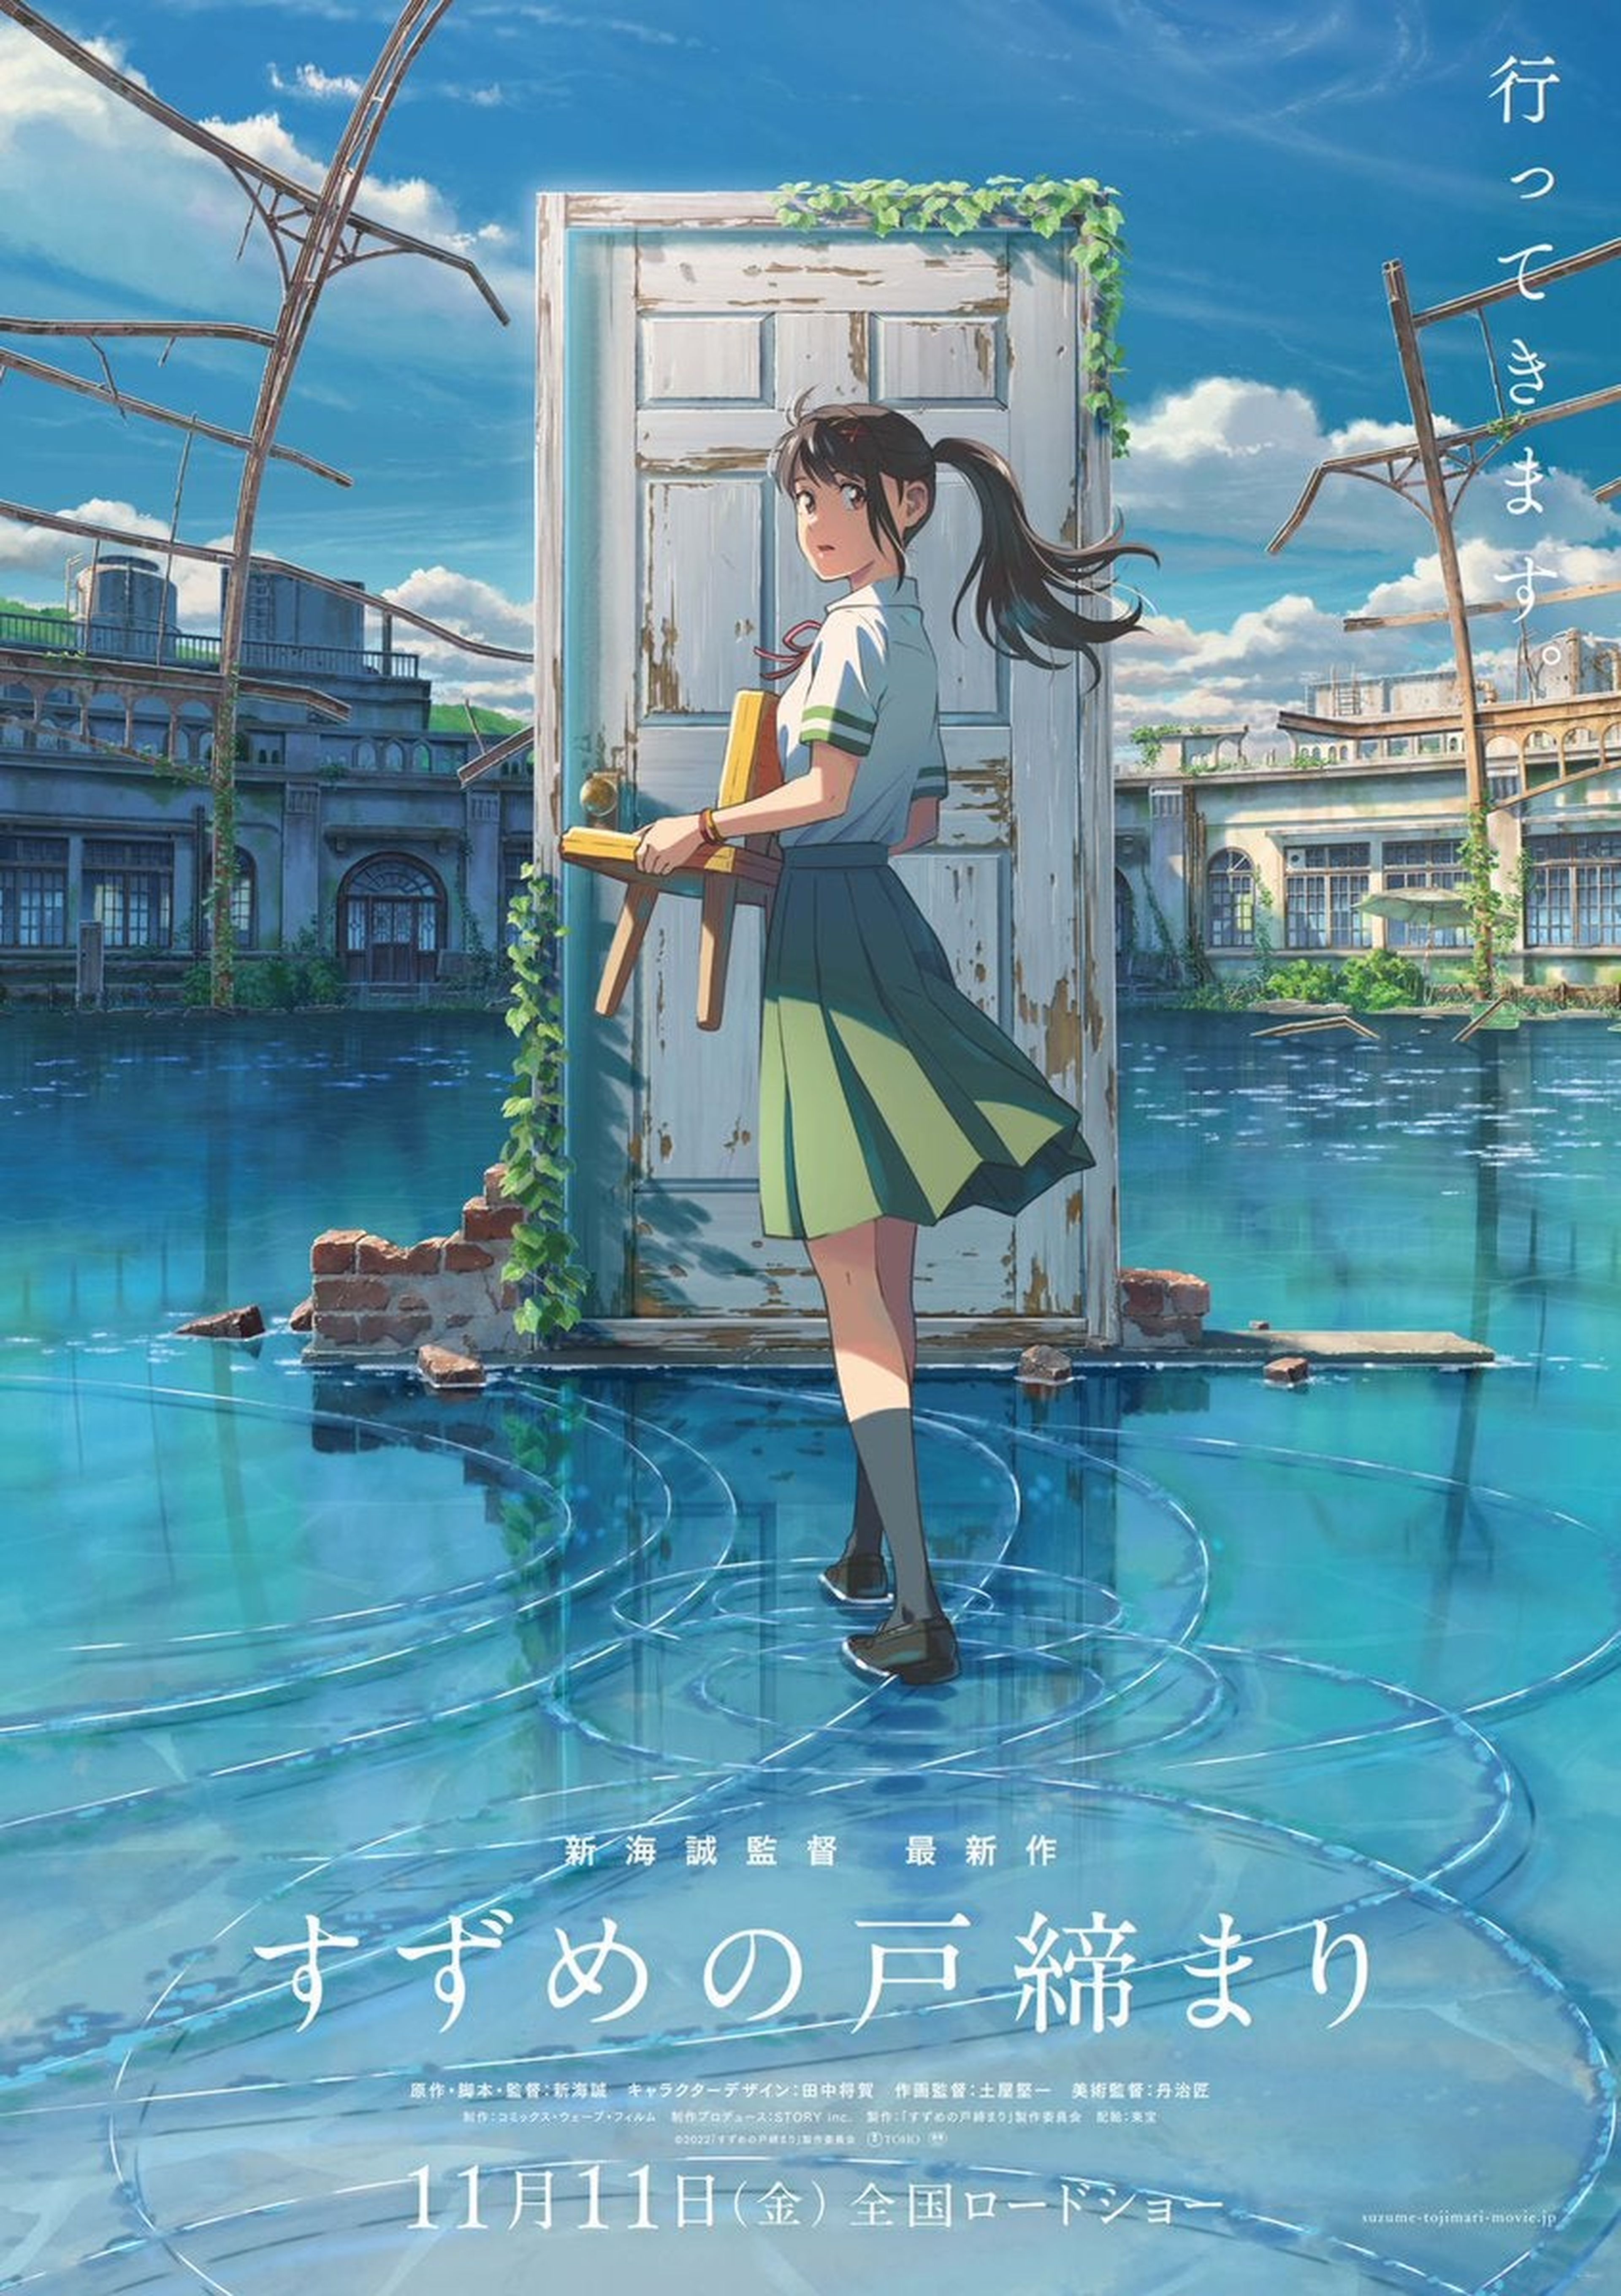 Suzume's Door-Locking Suzume no tojimari Makoto Shinkai